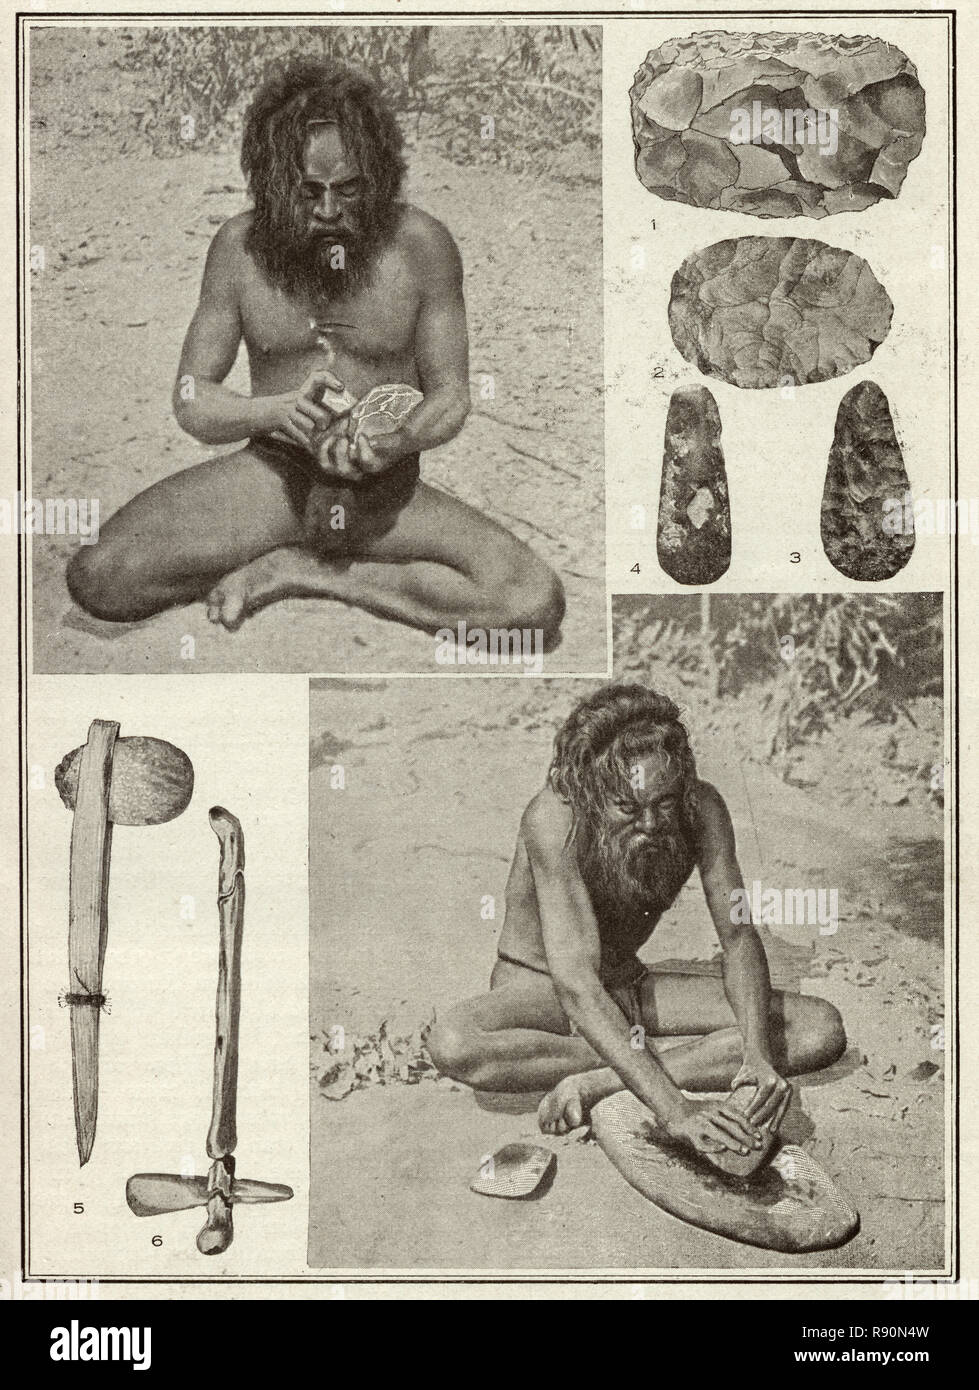 Vintage fotografía de un hombre de la tribu Warumungu haciendo herramientas de piedra y ejes. Los Warumungu (o Warramunga) son un grupo de los Australianos Indígenas del Territorio del Norte. Foto de stock